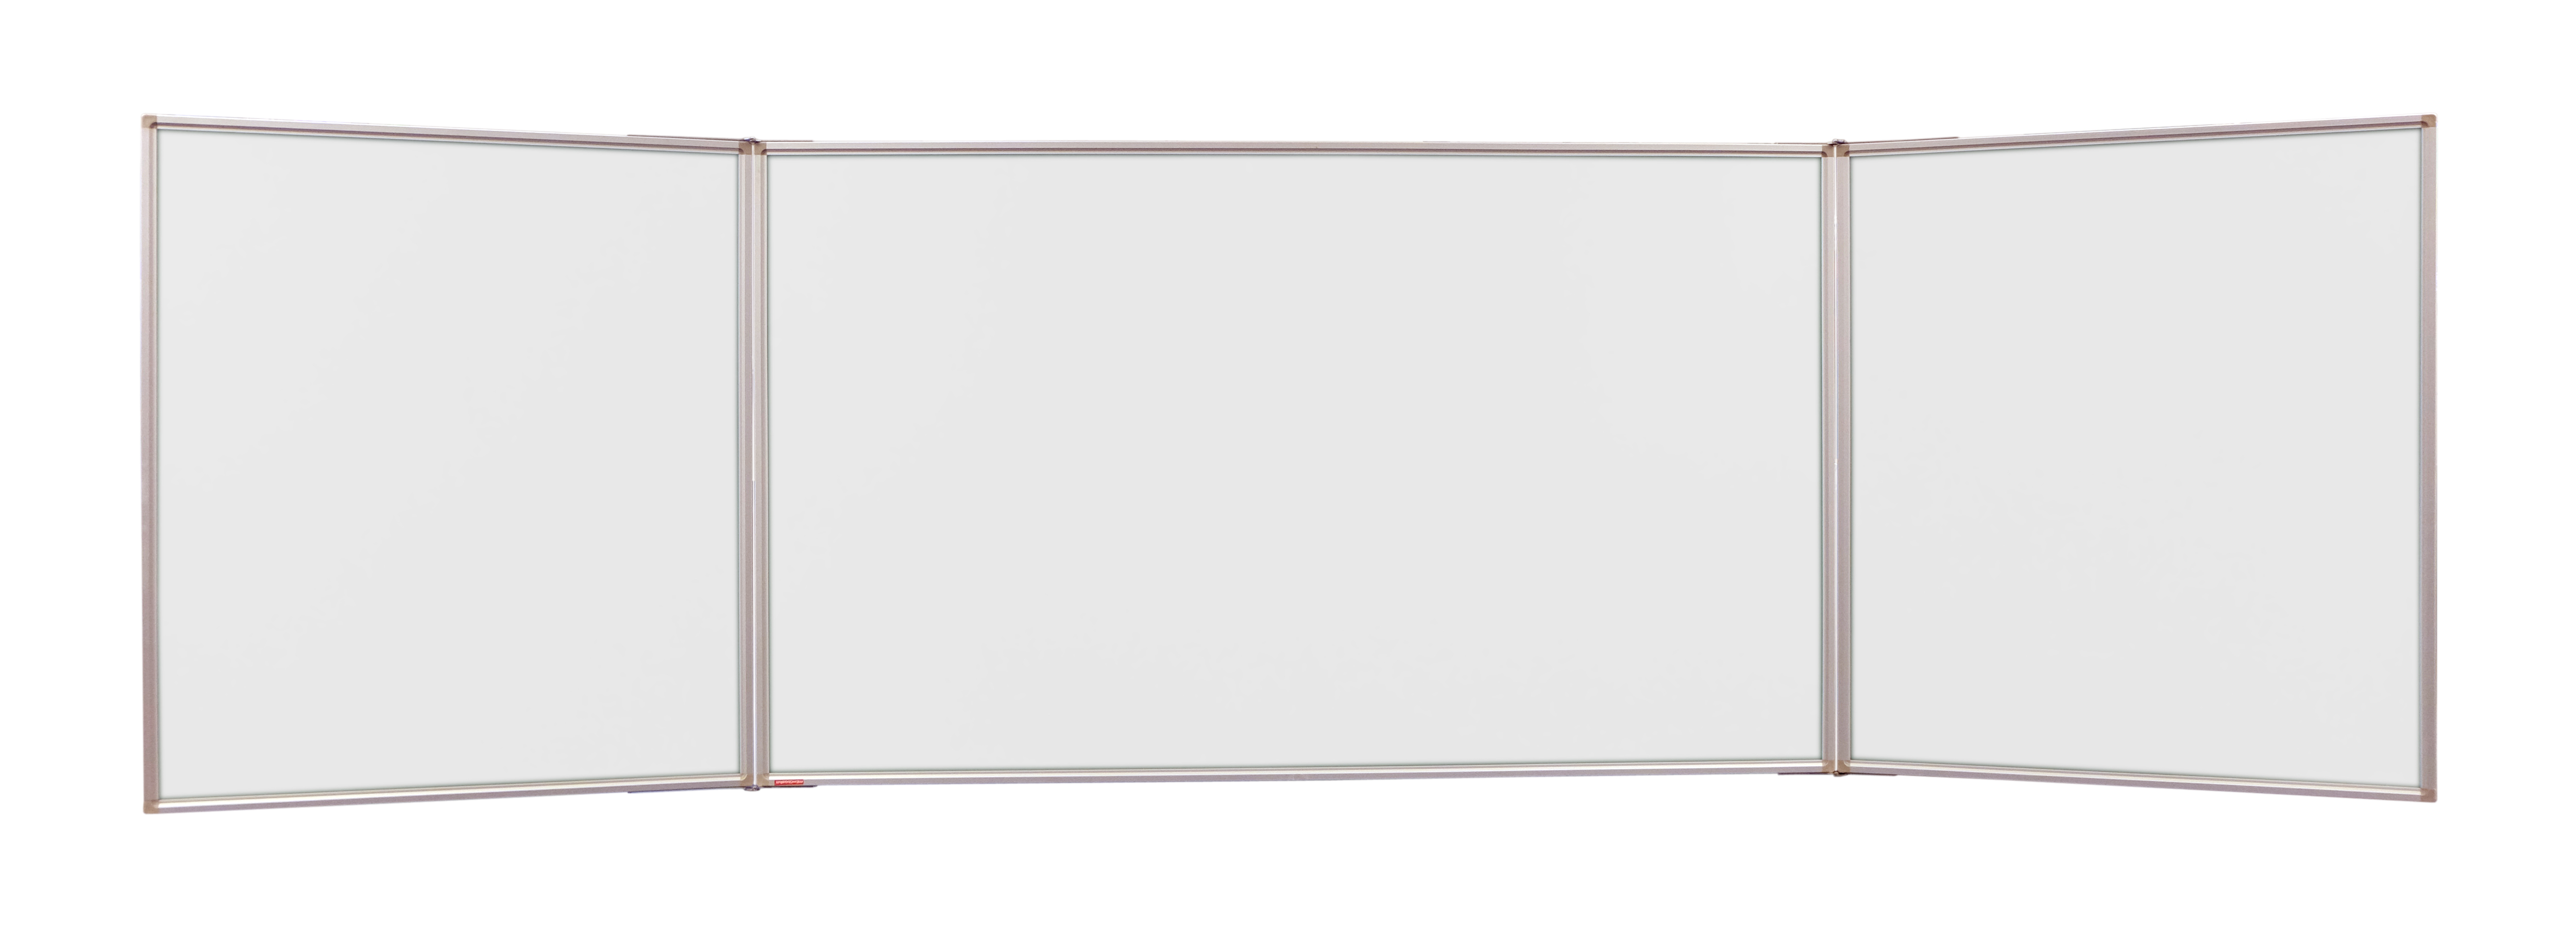 Whiteboard Triptic Rama Aluminiu Memoboards 100*170cm